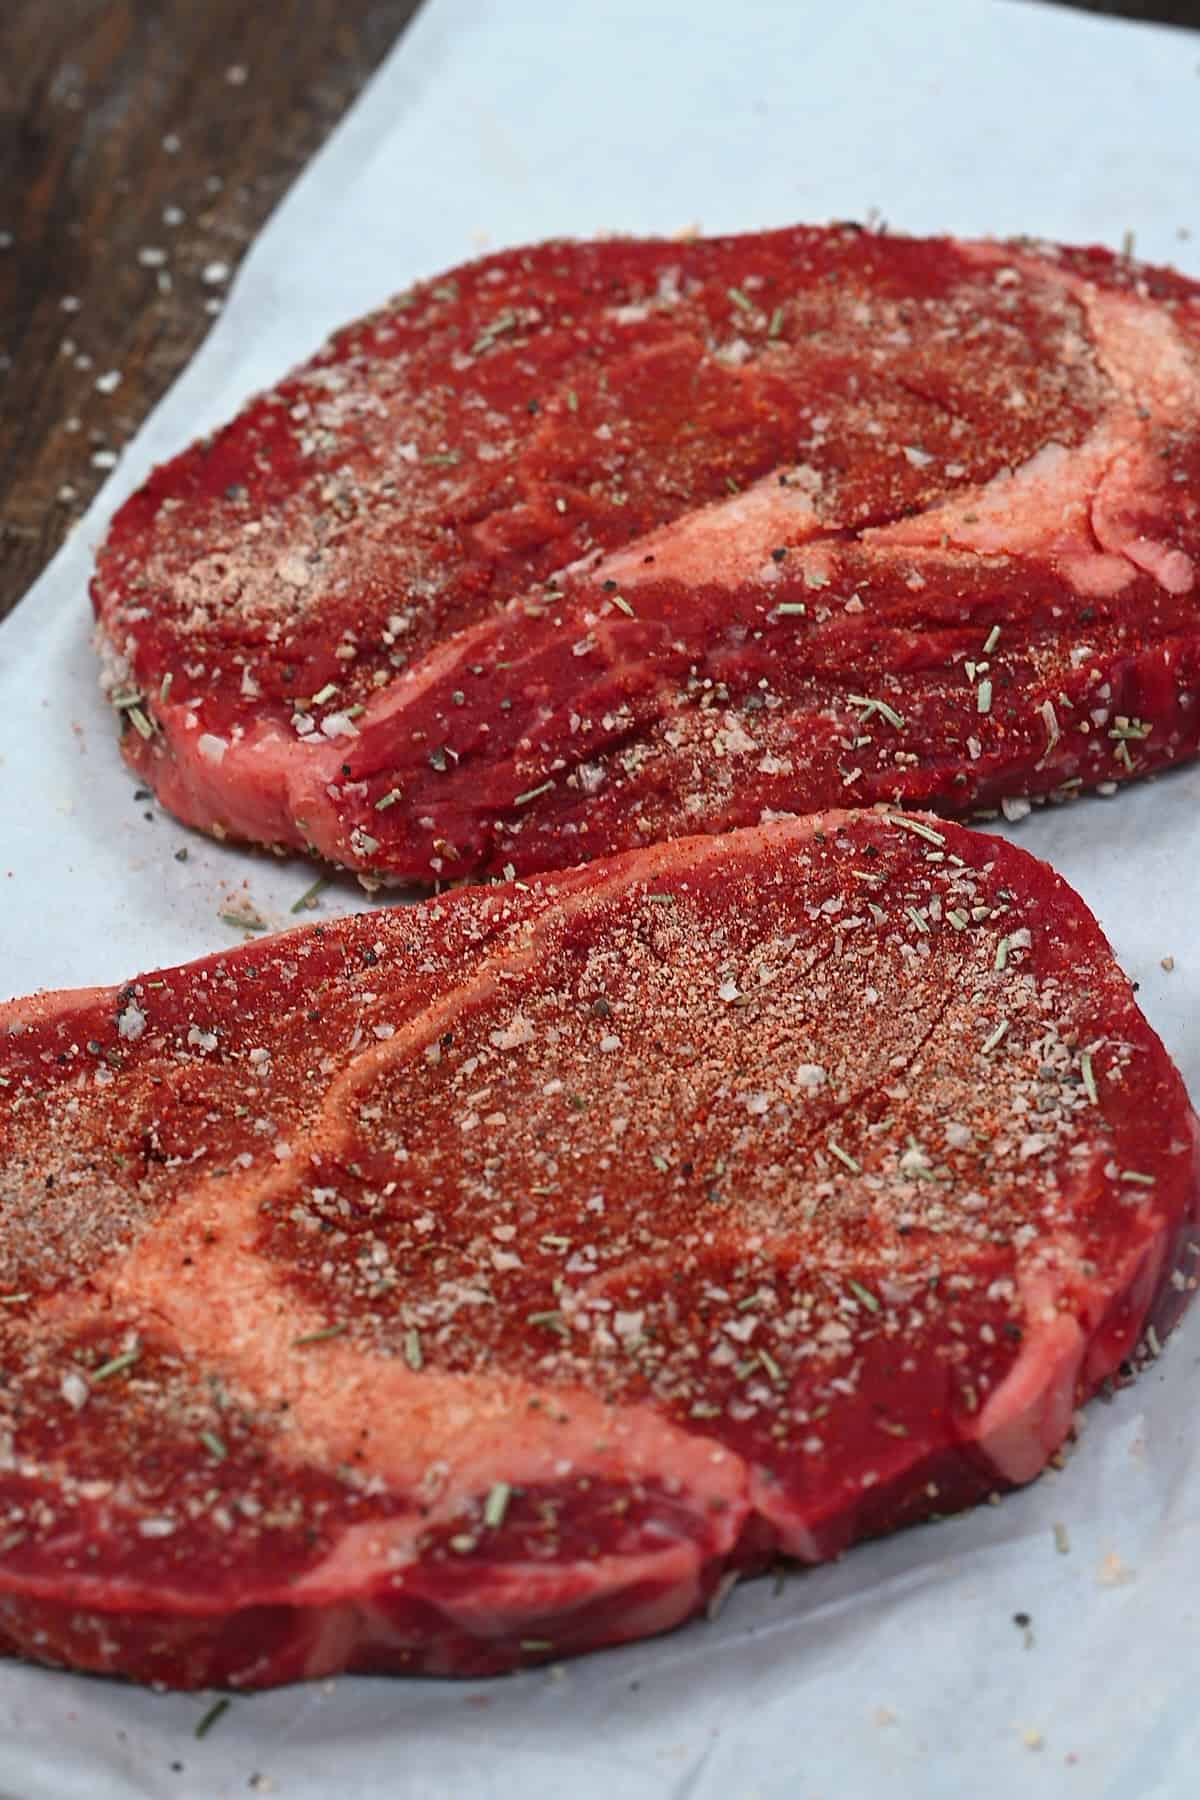 Steak with seasoning